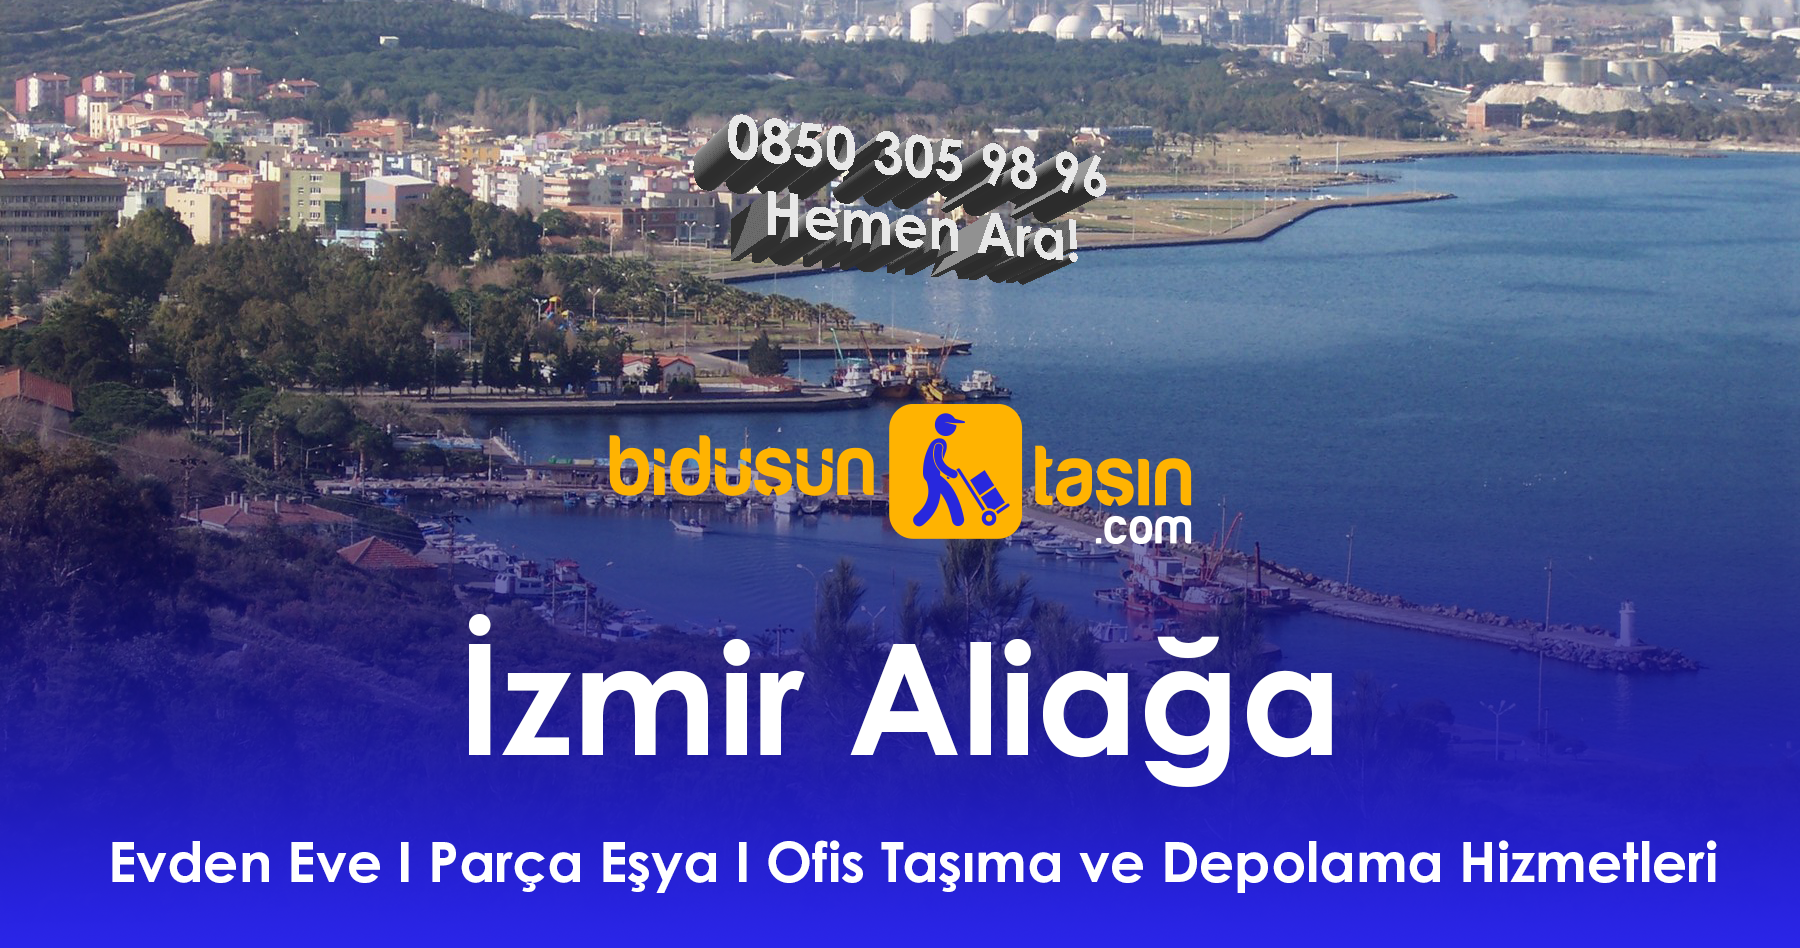 İzmir Aliağa evden eve nakliyat firması için Bidüşüntaşın İzmir taşıma ve depolama hizmetlerinden yararlanabilirsiniz.